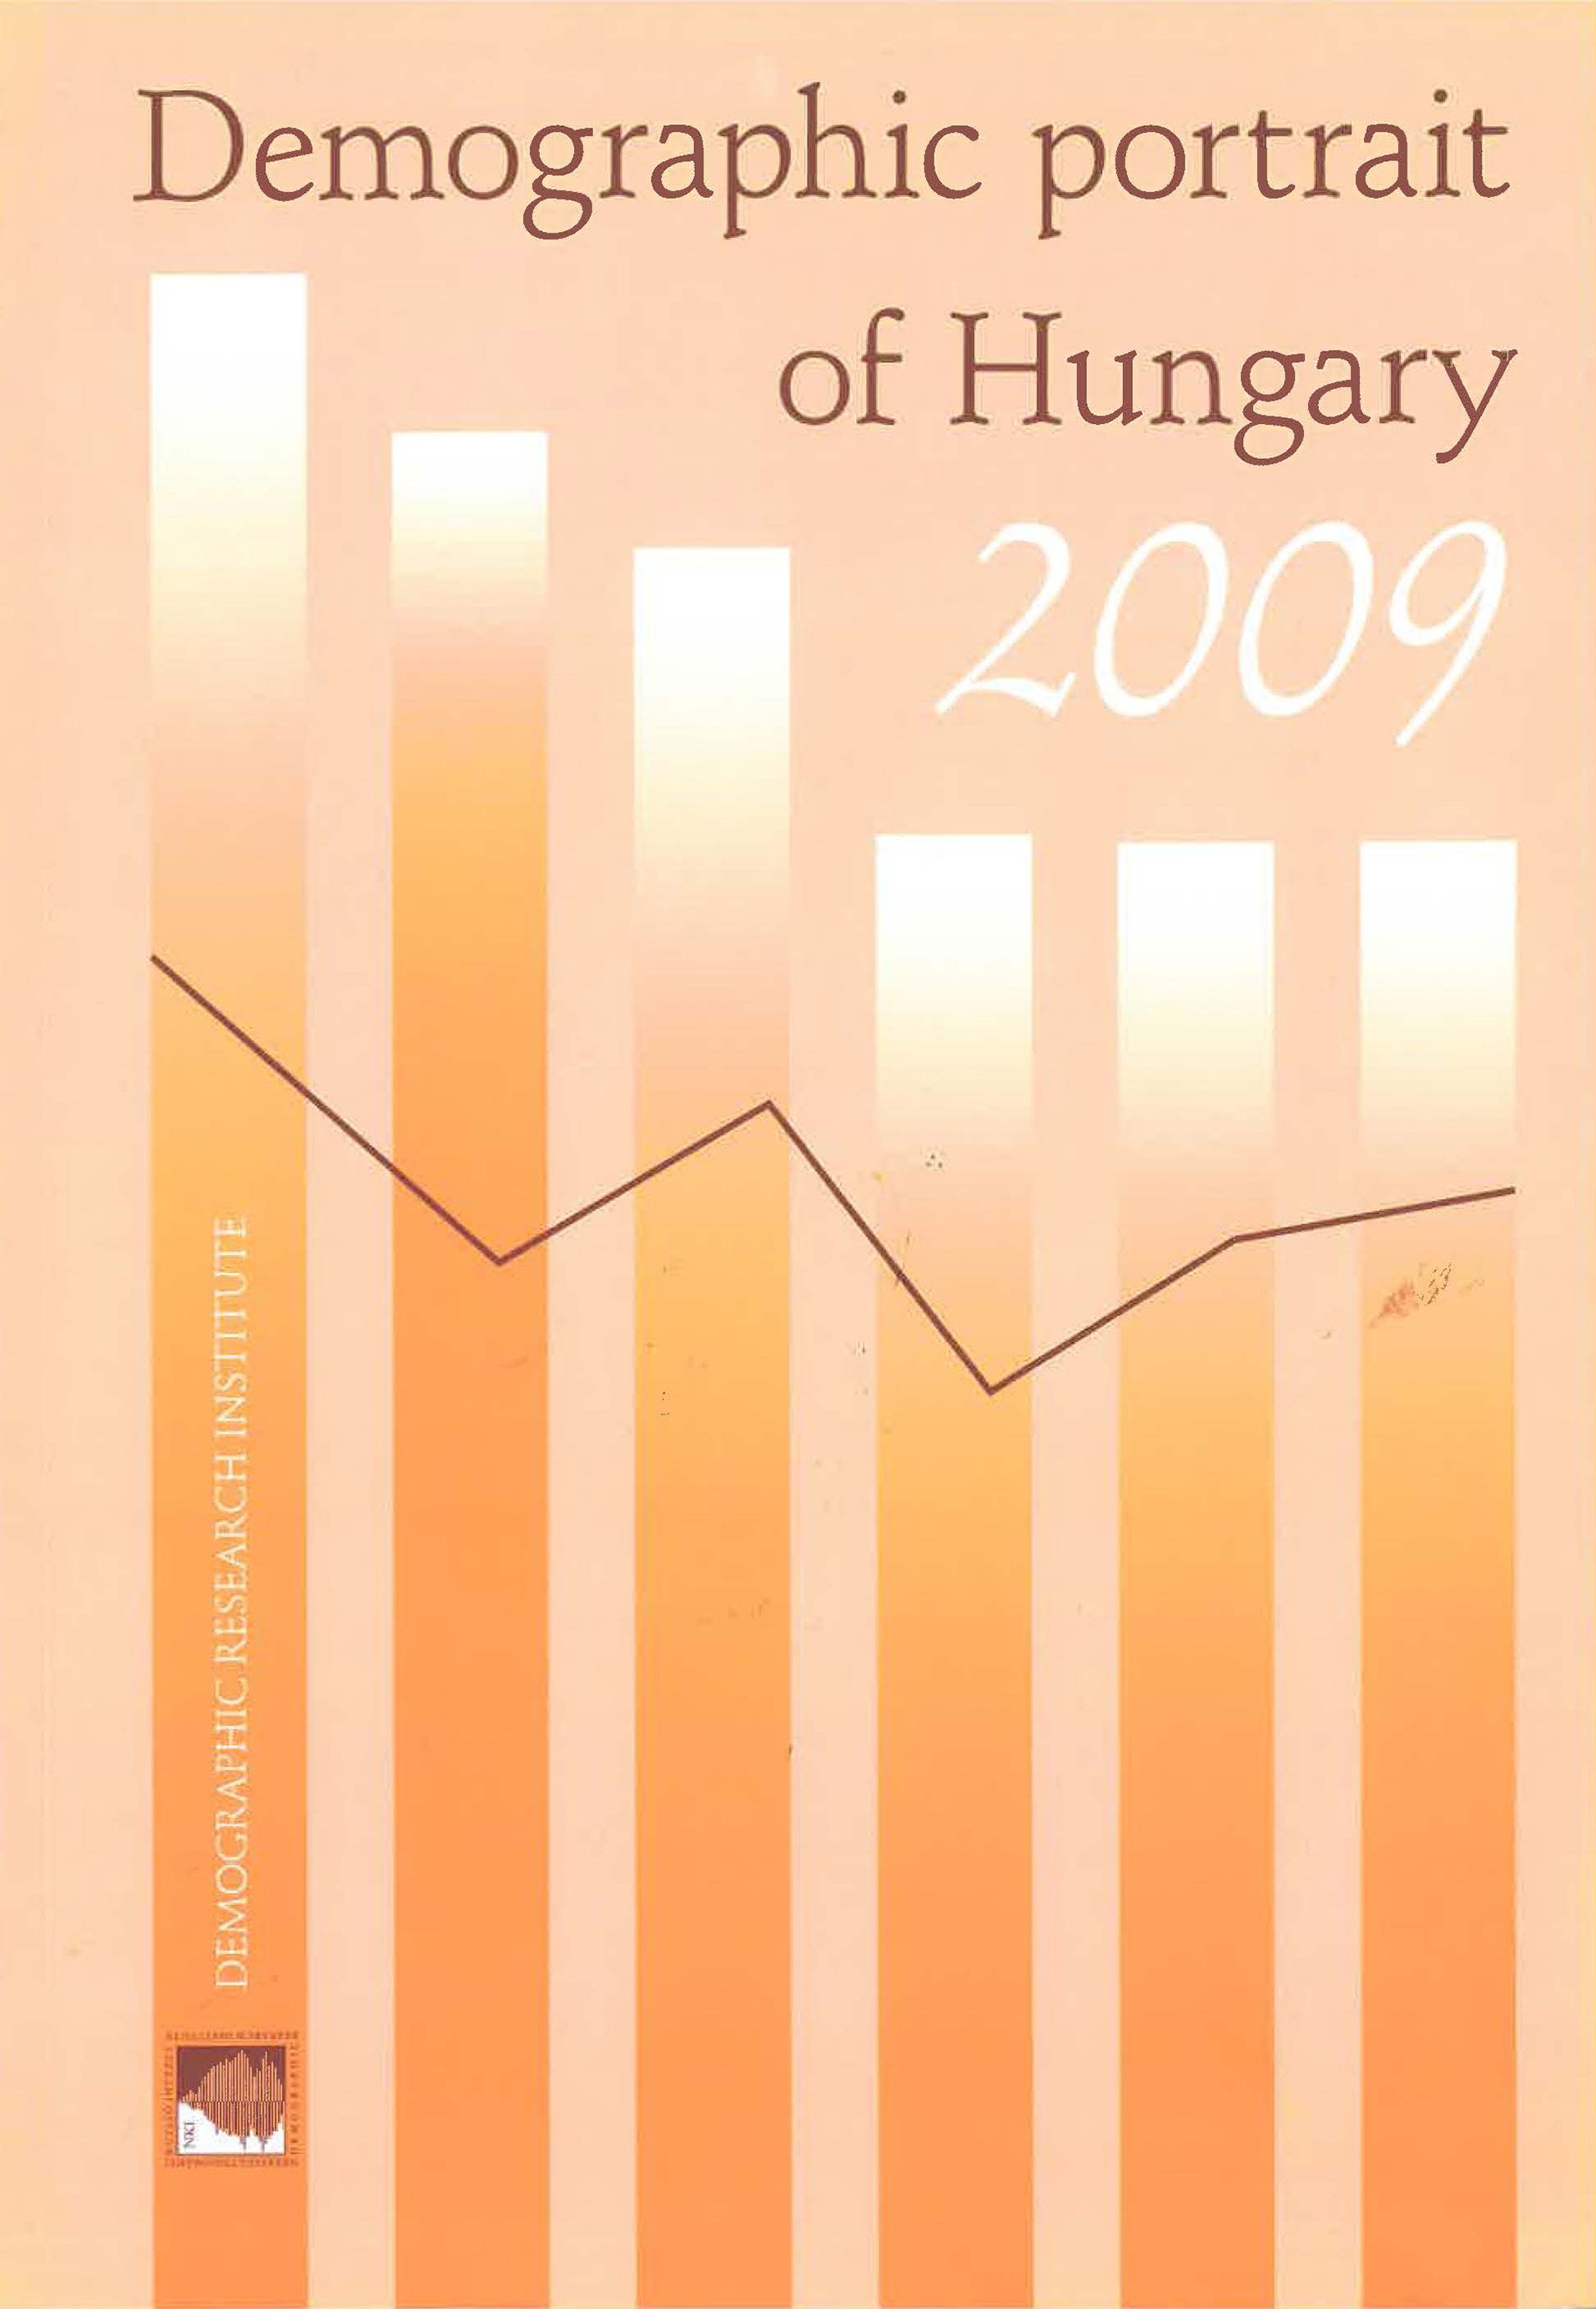 					View Monostori, Judit - Őri, Péter - S. Molnár, Edit - Spéder, Zsolt (eds.): Demographic Portrait of Hungary 2009
				